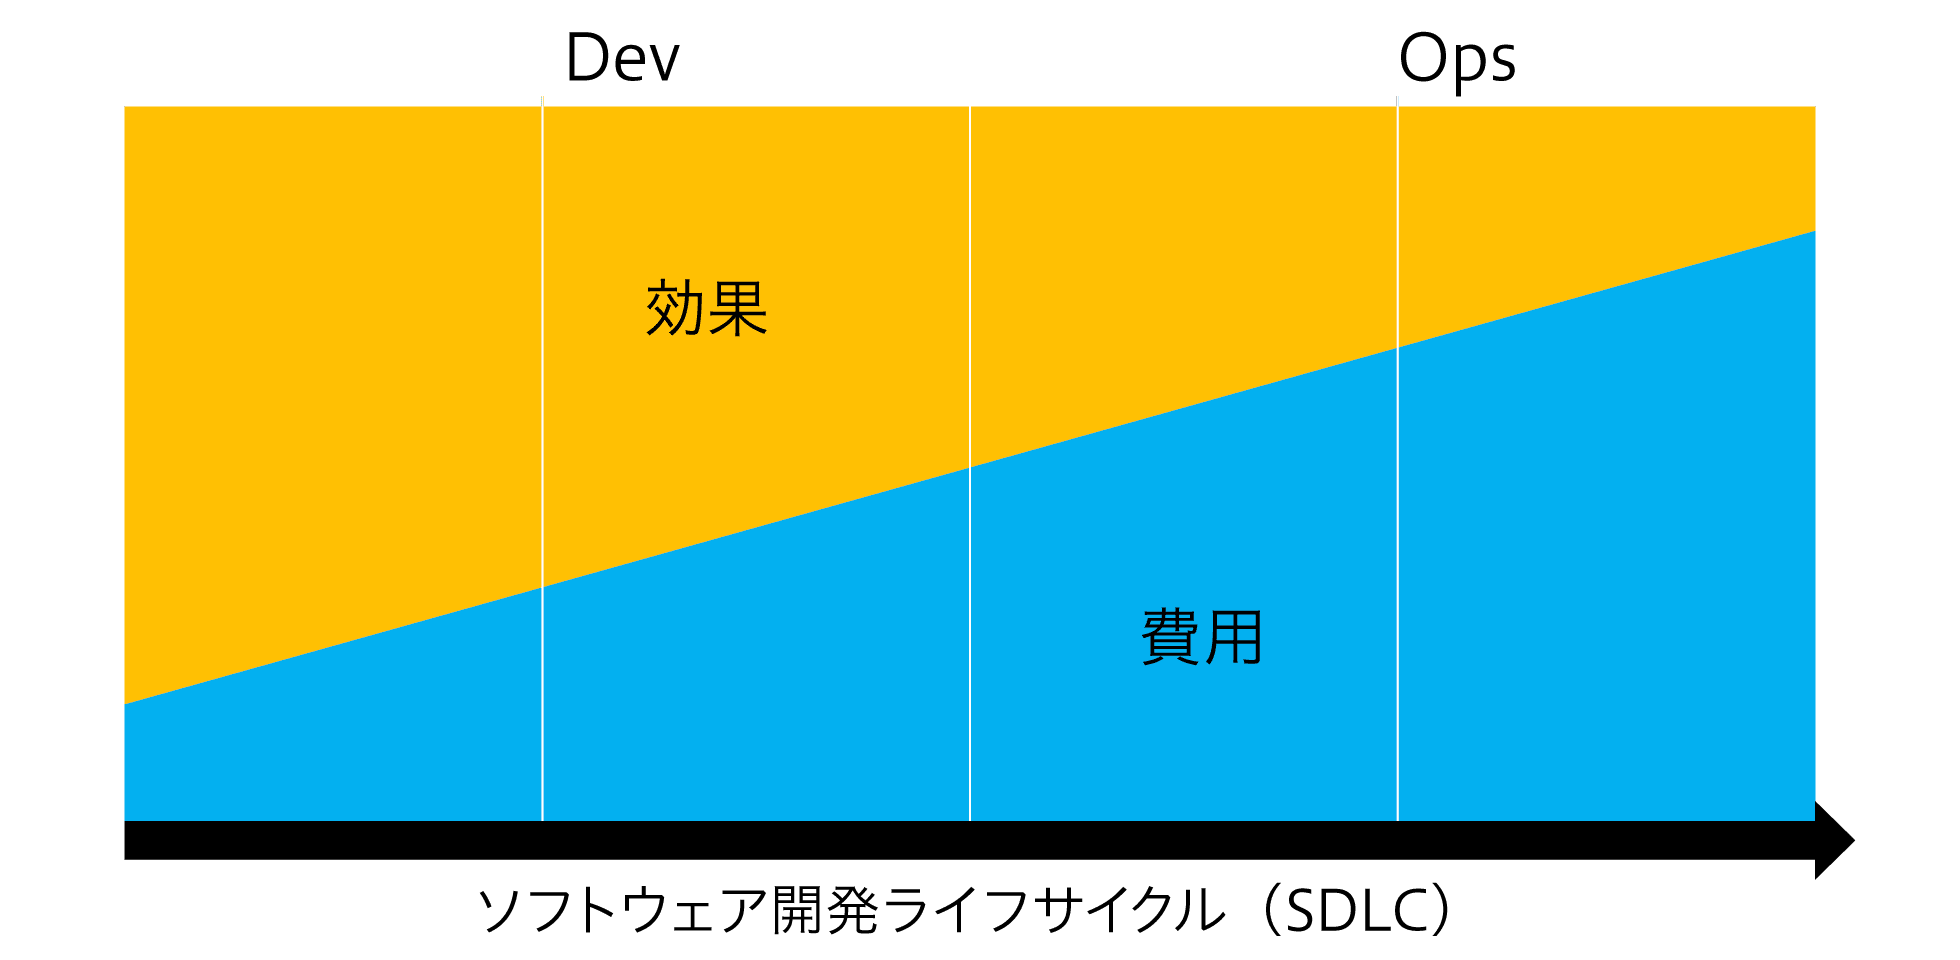 ソフトウェア開発ライフサイクル（SDLC）における費用対効果